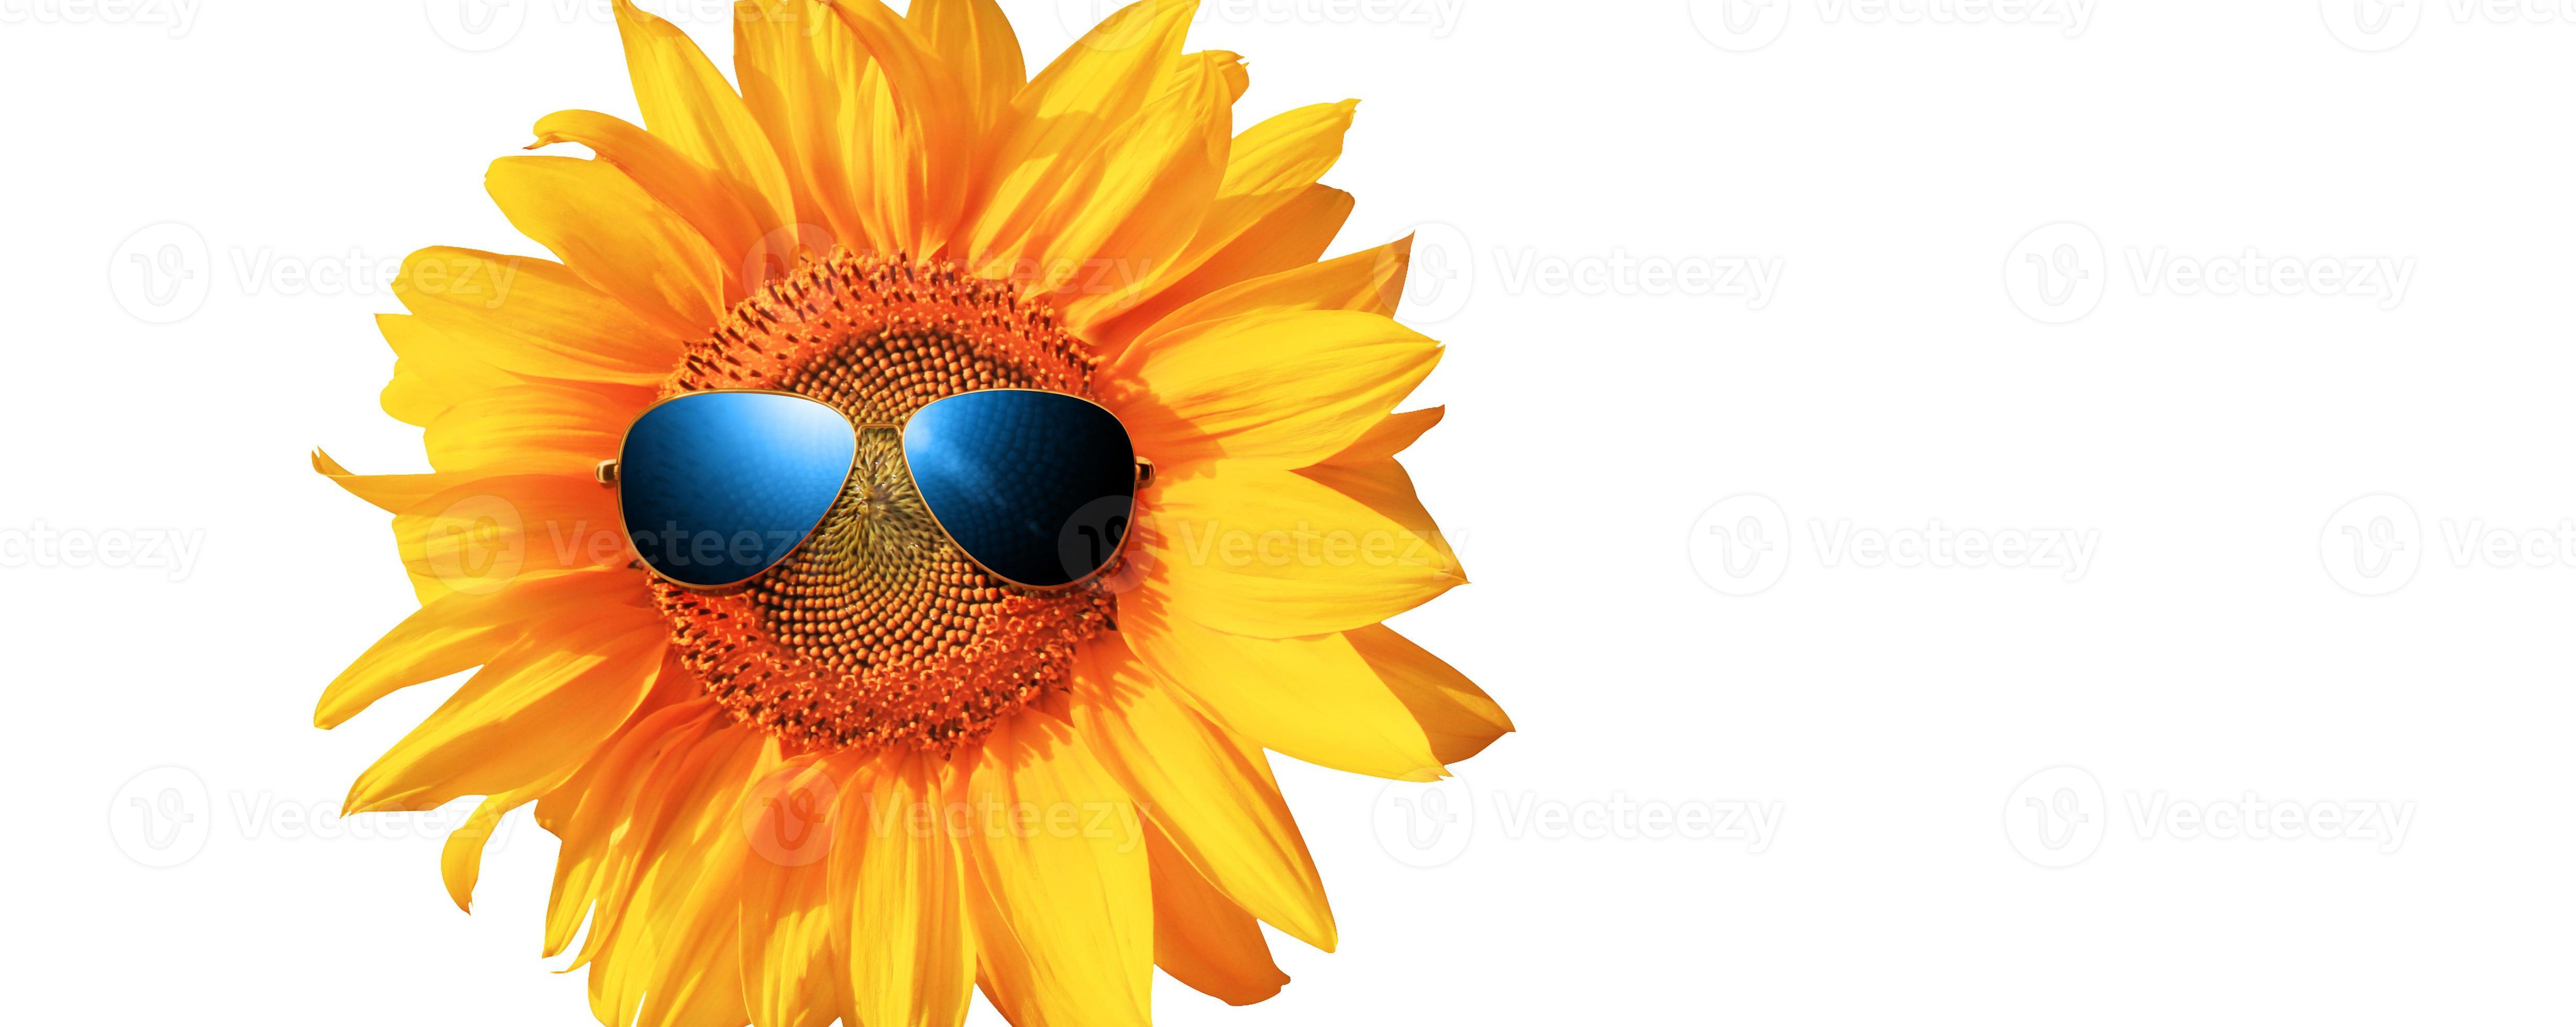 Overeenstemming Niet ingewikkeld Wrok grappige zonnebloem met zonnebril op een witte achtergrond 8119833 Stockfoto